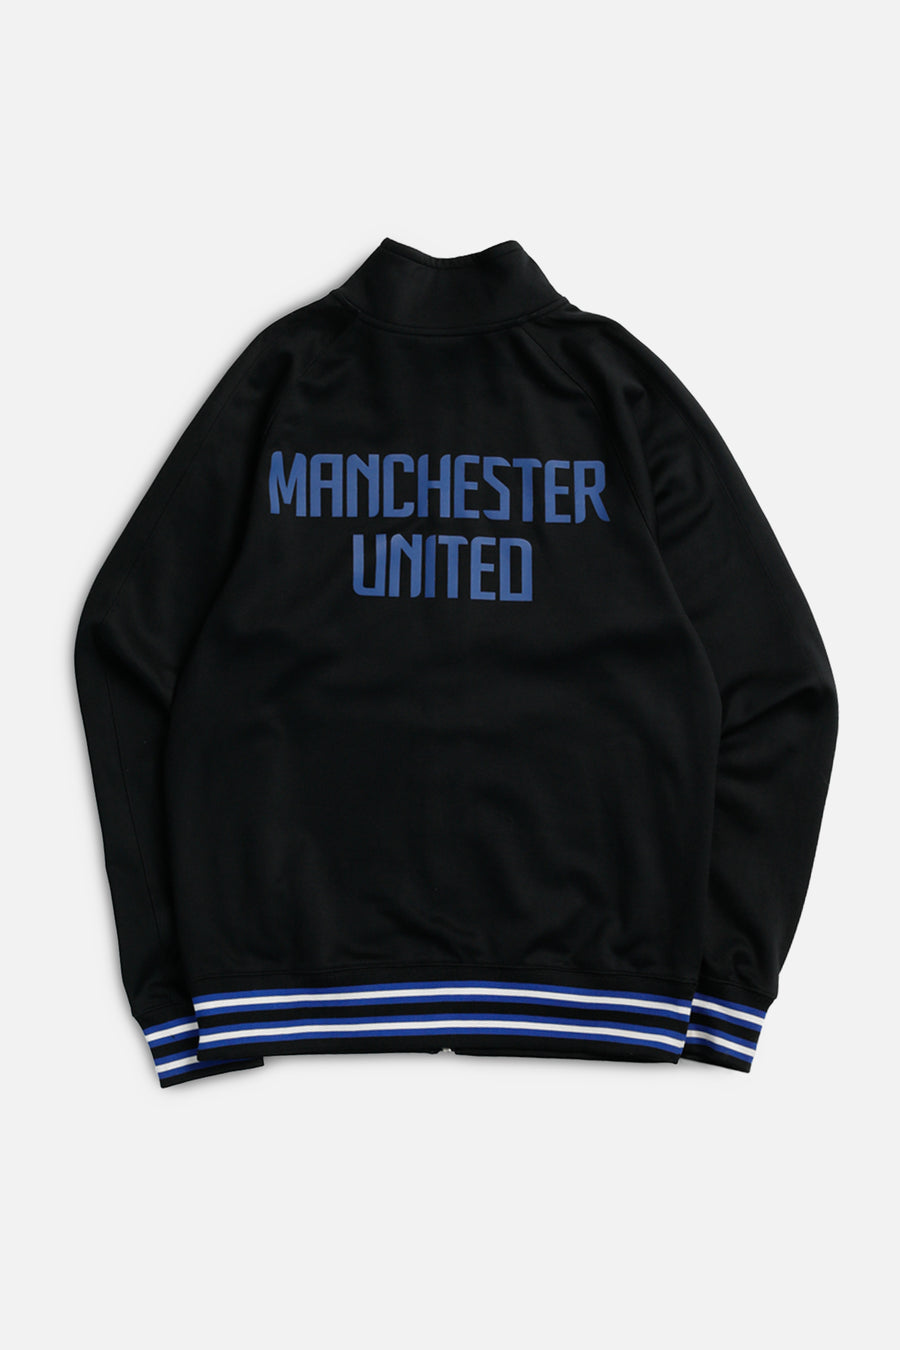 Vintage Manchester Soccer Track Jacket - S